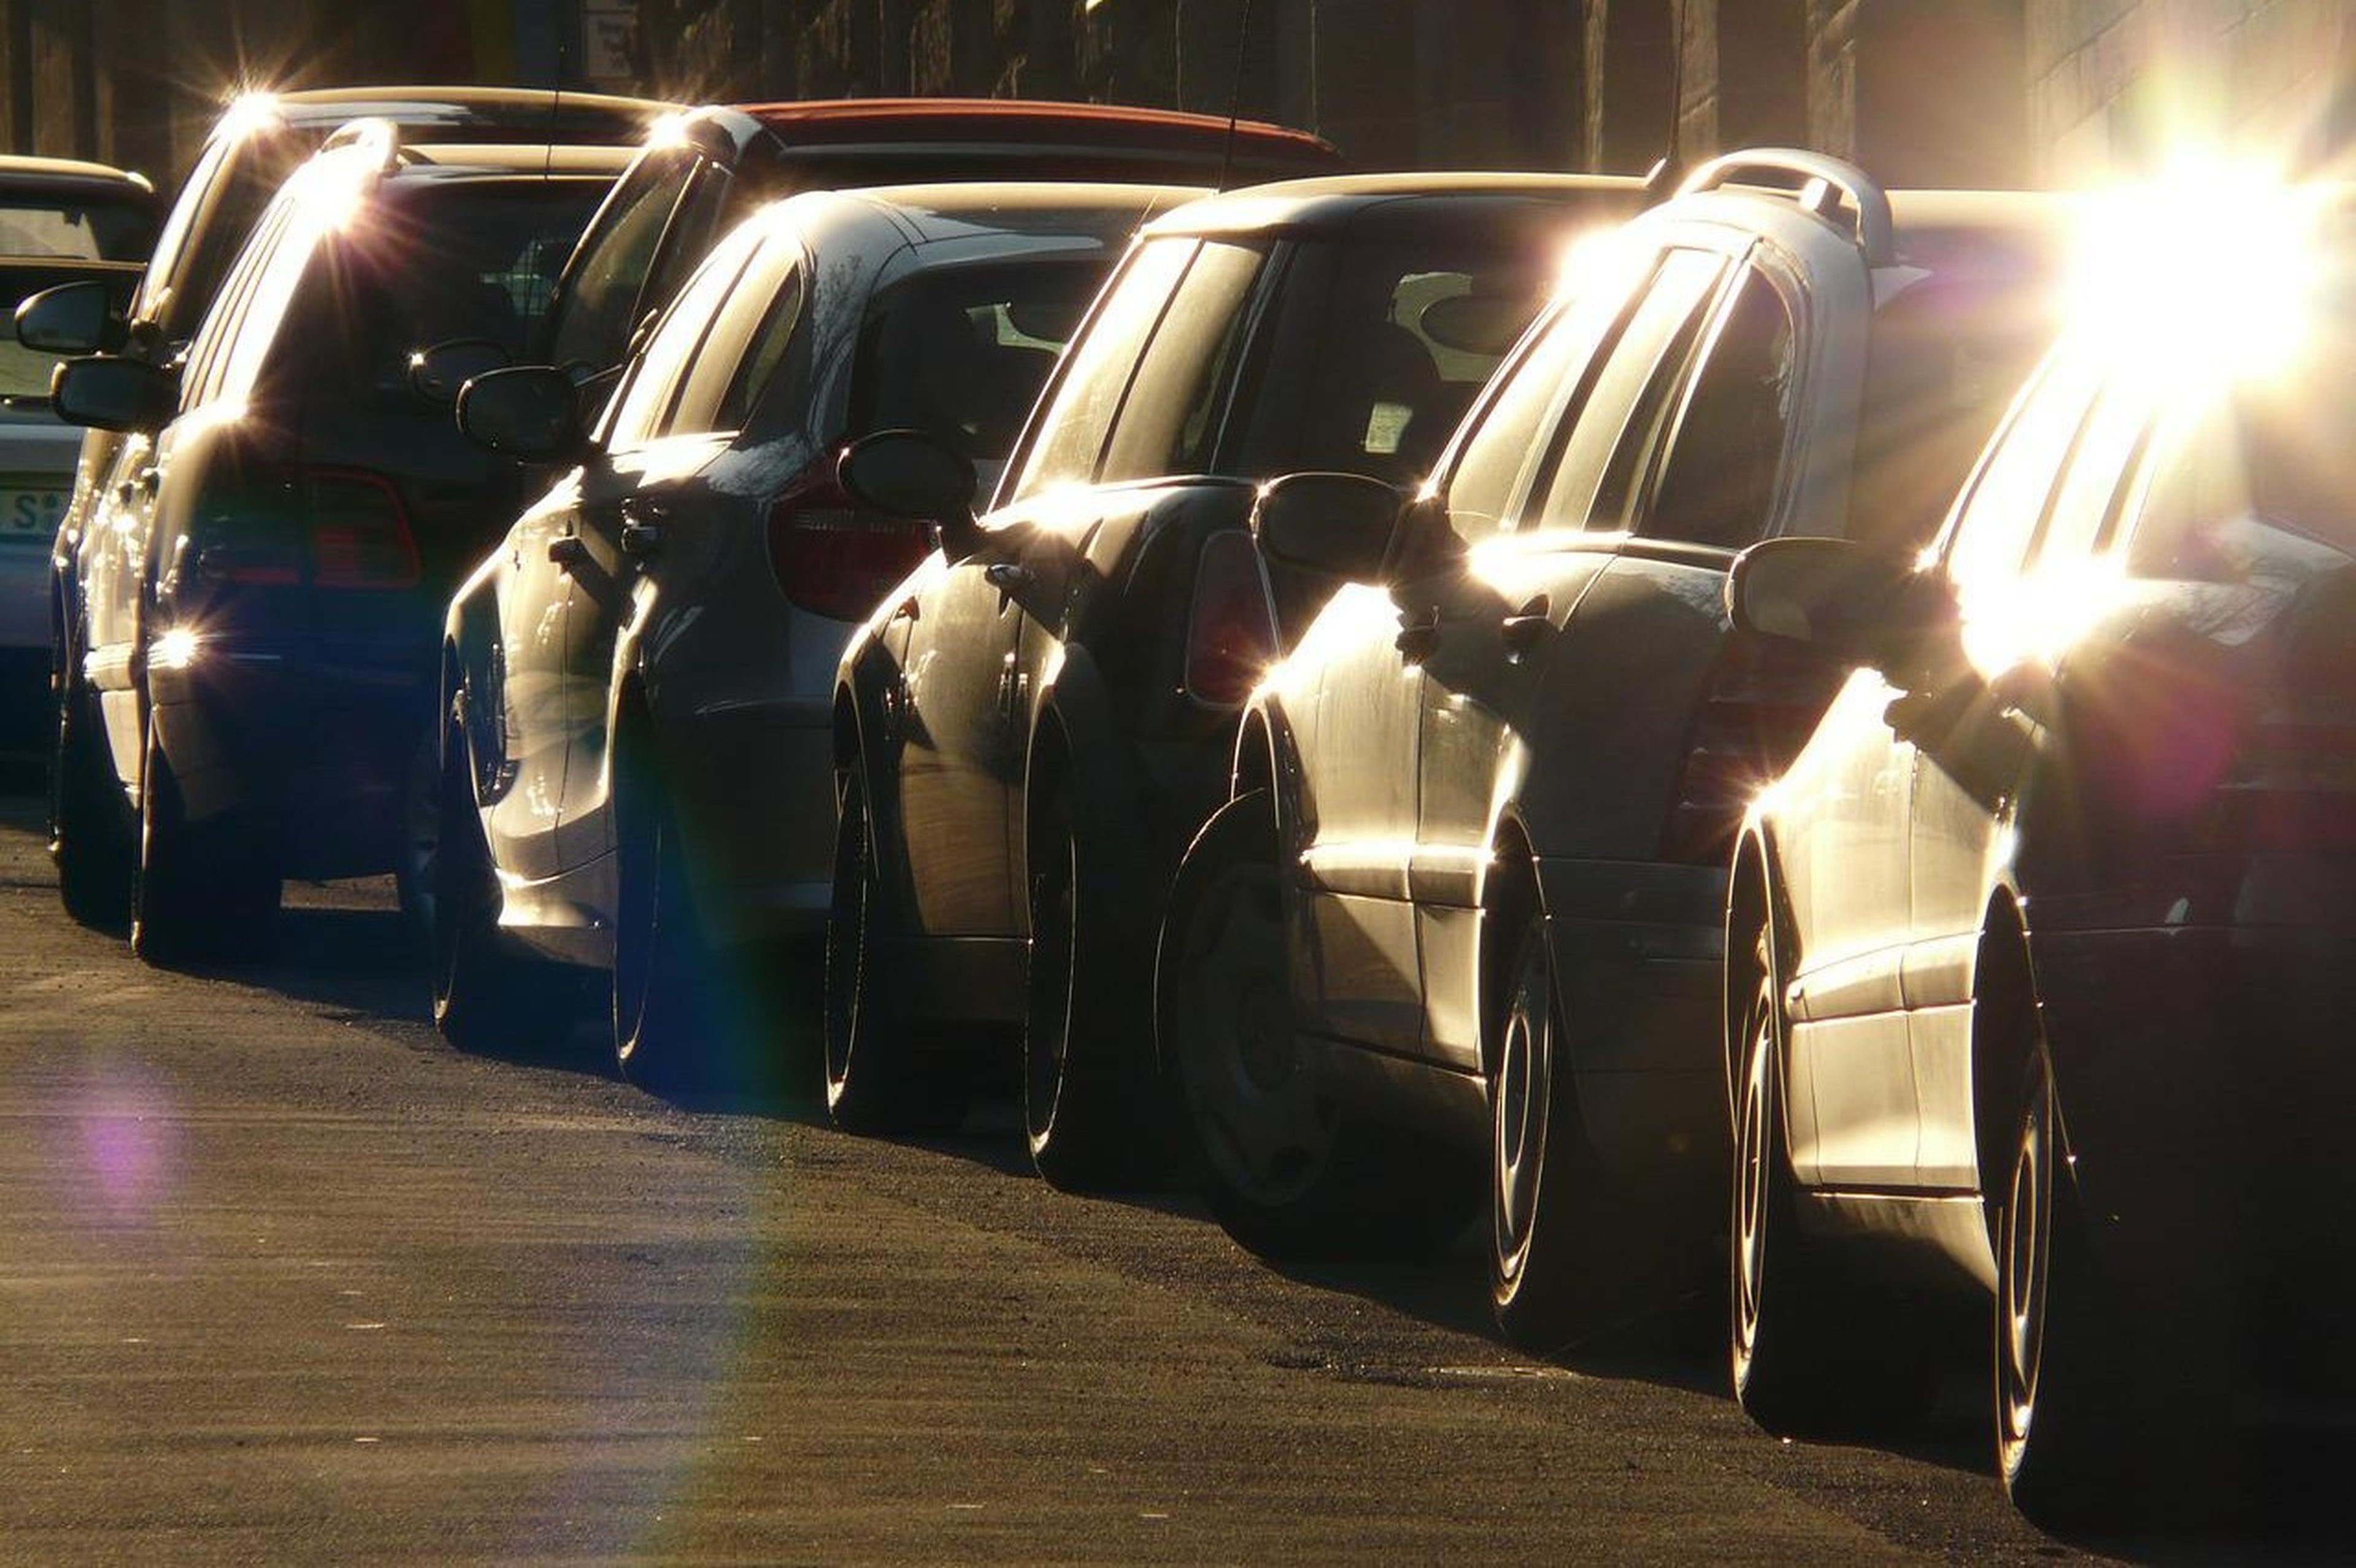 Parar, estacionar o detener el coche, aprende las diferencias y evita multas